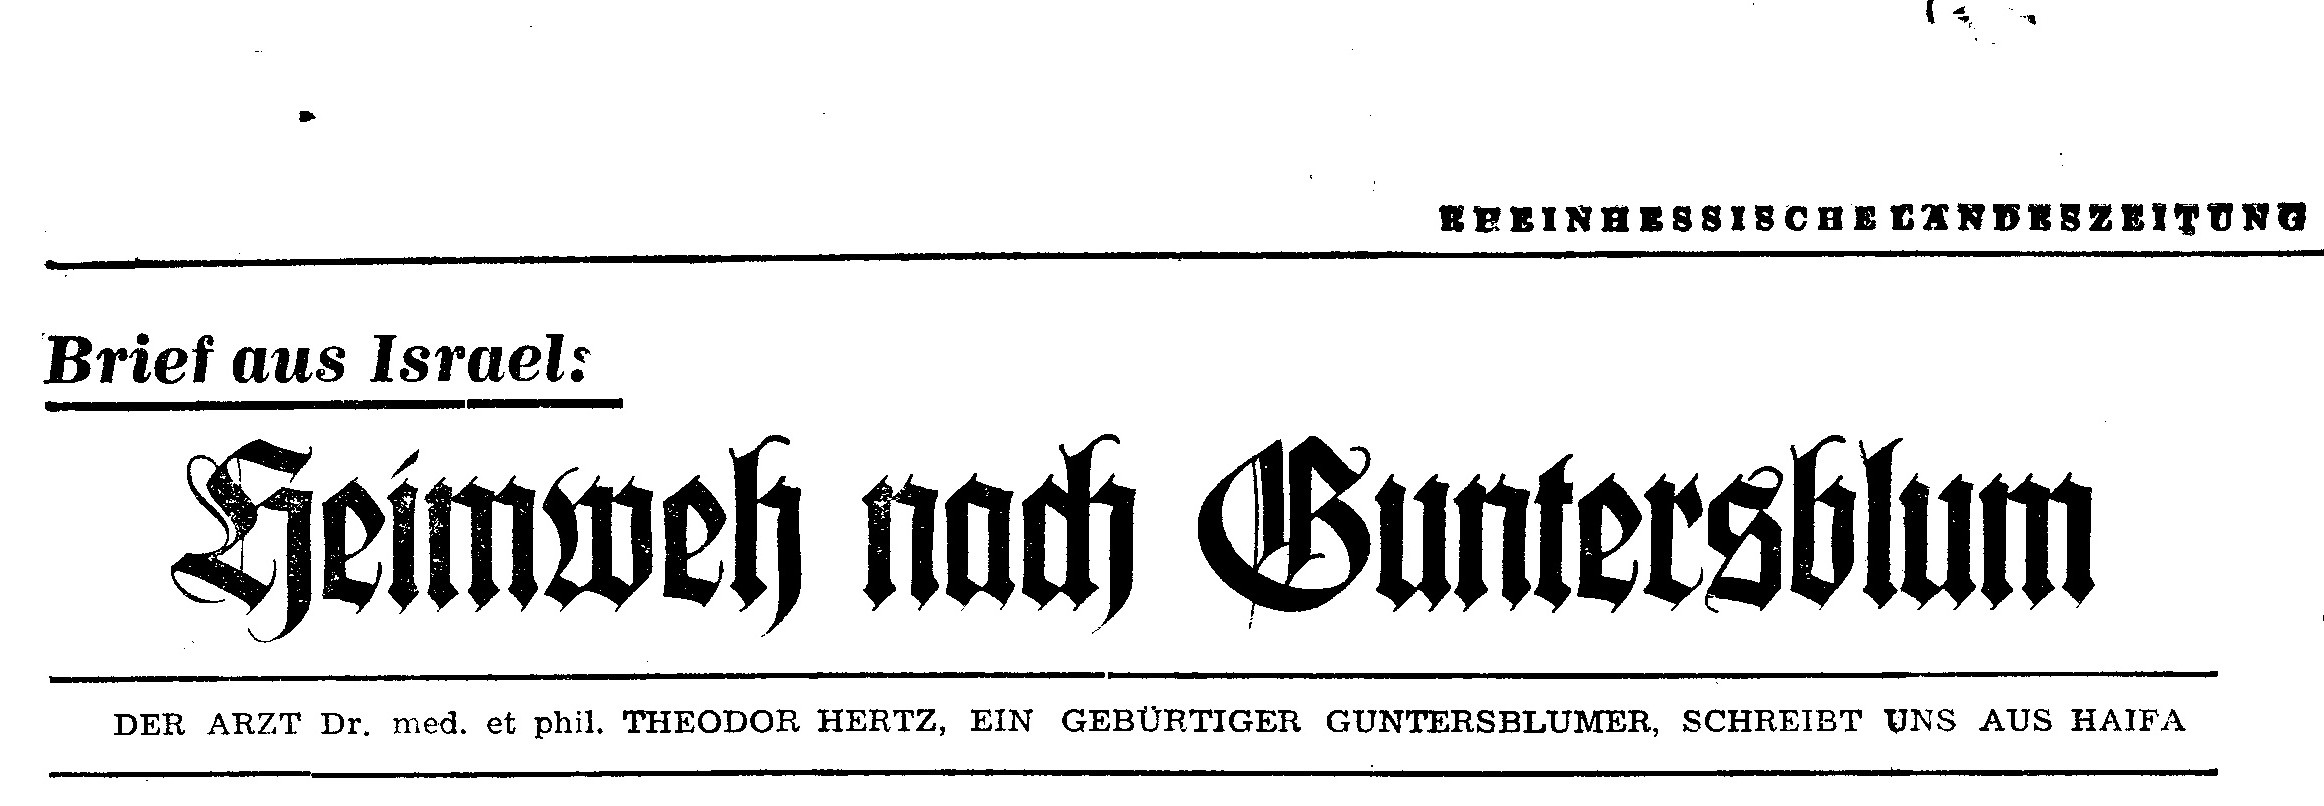 Brief aus Israel: "Heimweh nach Guntersblum" (1961) (Kulturverein Guntersblum CC BY-NC-SA)